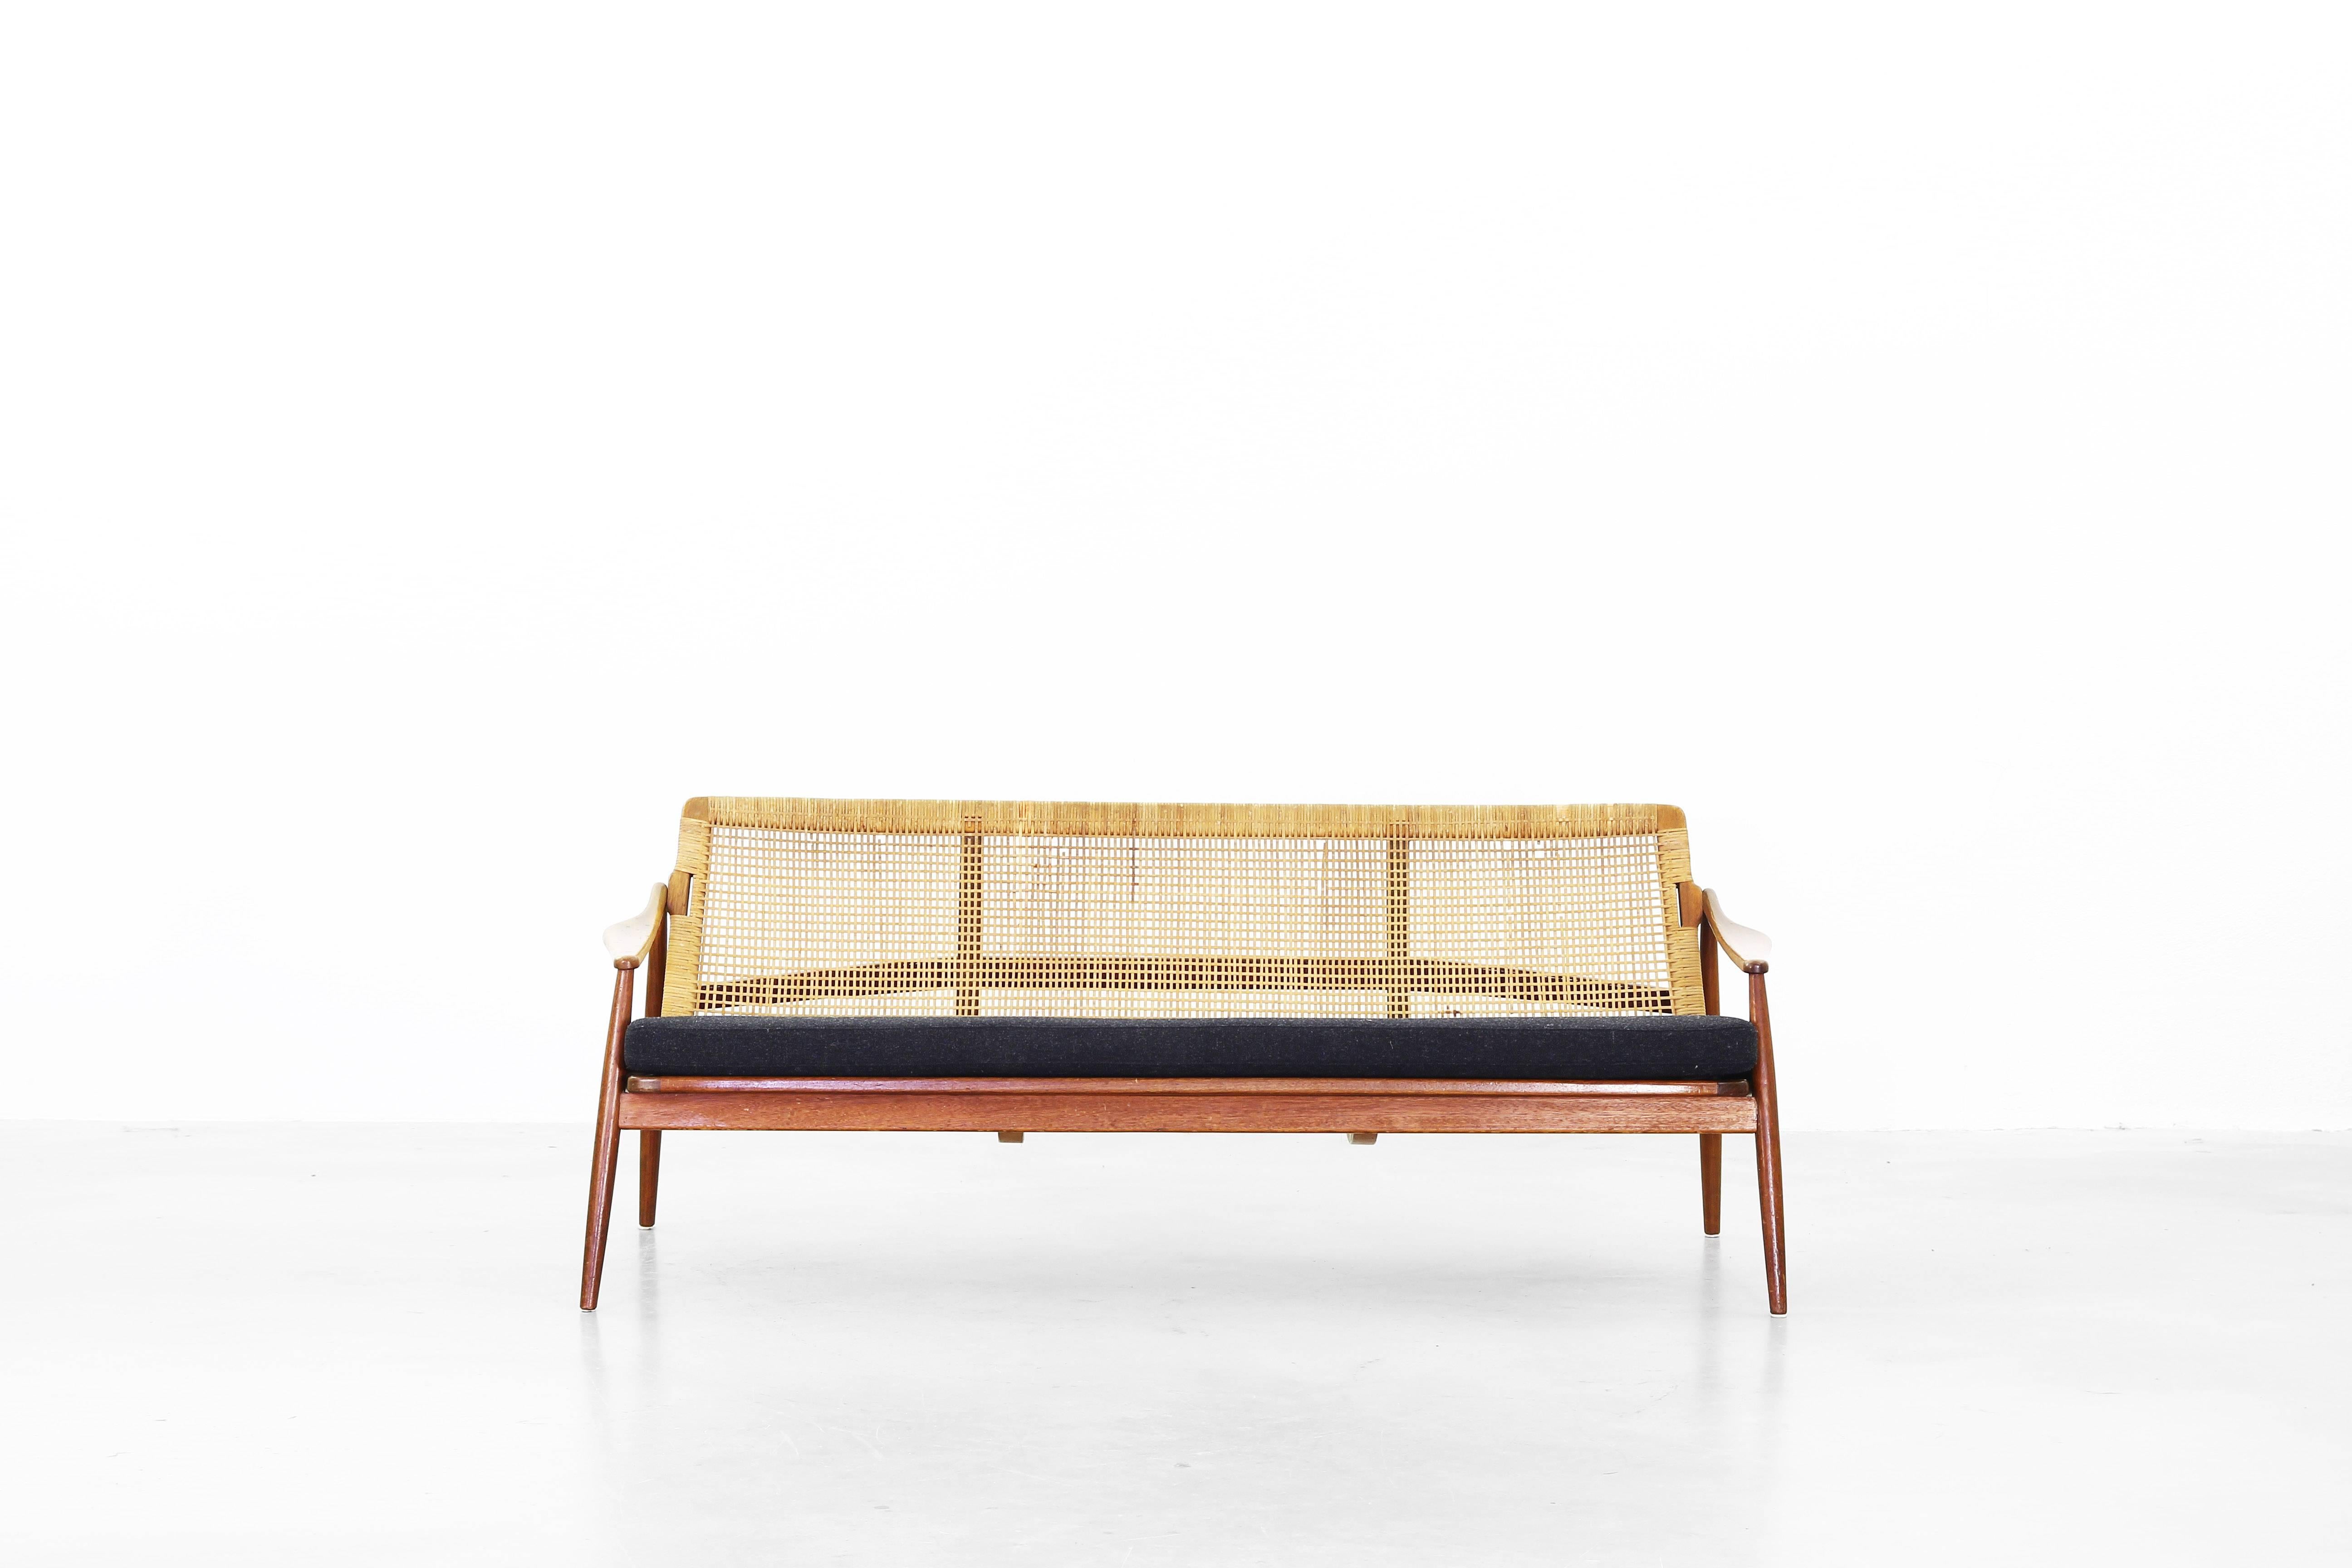 Schönes Sofa von Hartmut Lohmeyer für Wilkhahn, entworfen in den 1950er Jahren.
Das Sofa ist in einem sehr guten Zustand mit nur geringen Gebrauchsspuren. Die Kissen wurden mit einem hochwertigen Stoff von Kvadrat in Dunkelgrau neu gepolstert.